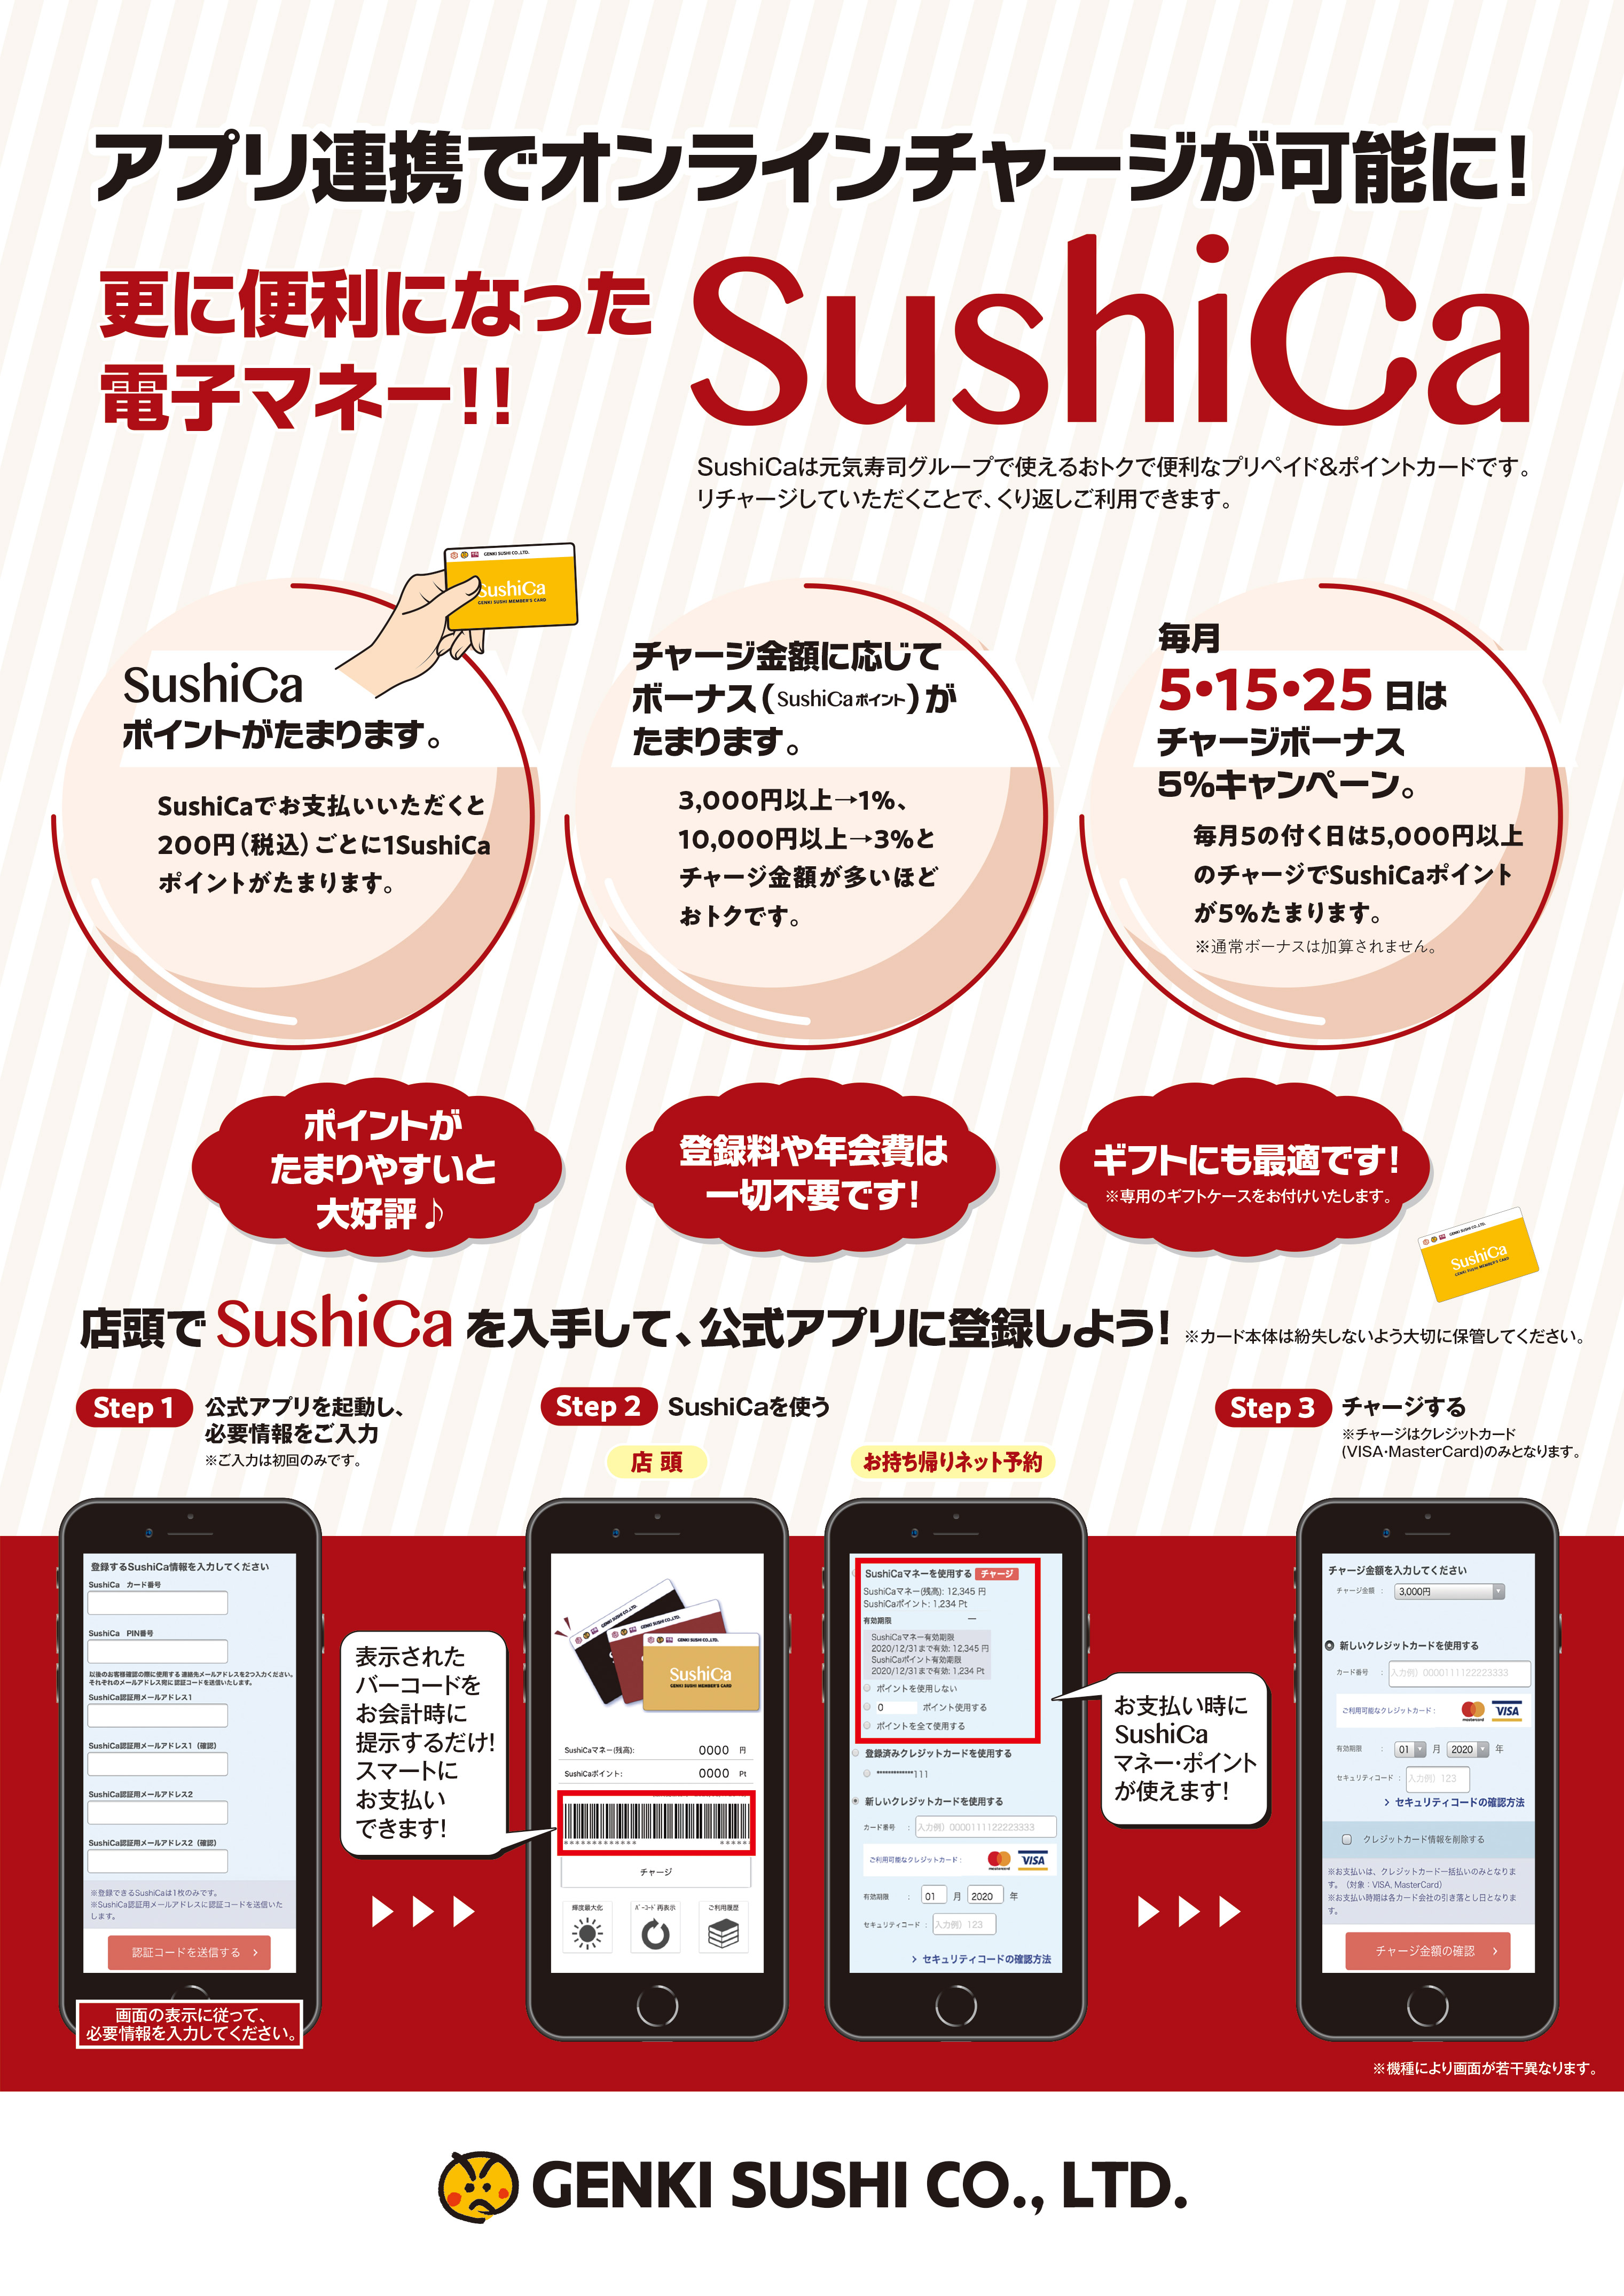 お寿司がカードレス 簡単チャージで便利に 元気寿司のお寿司系電子マネー Sushica スマホアプリでも利用可能に 元気寿司株式会社のプレスリリース